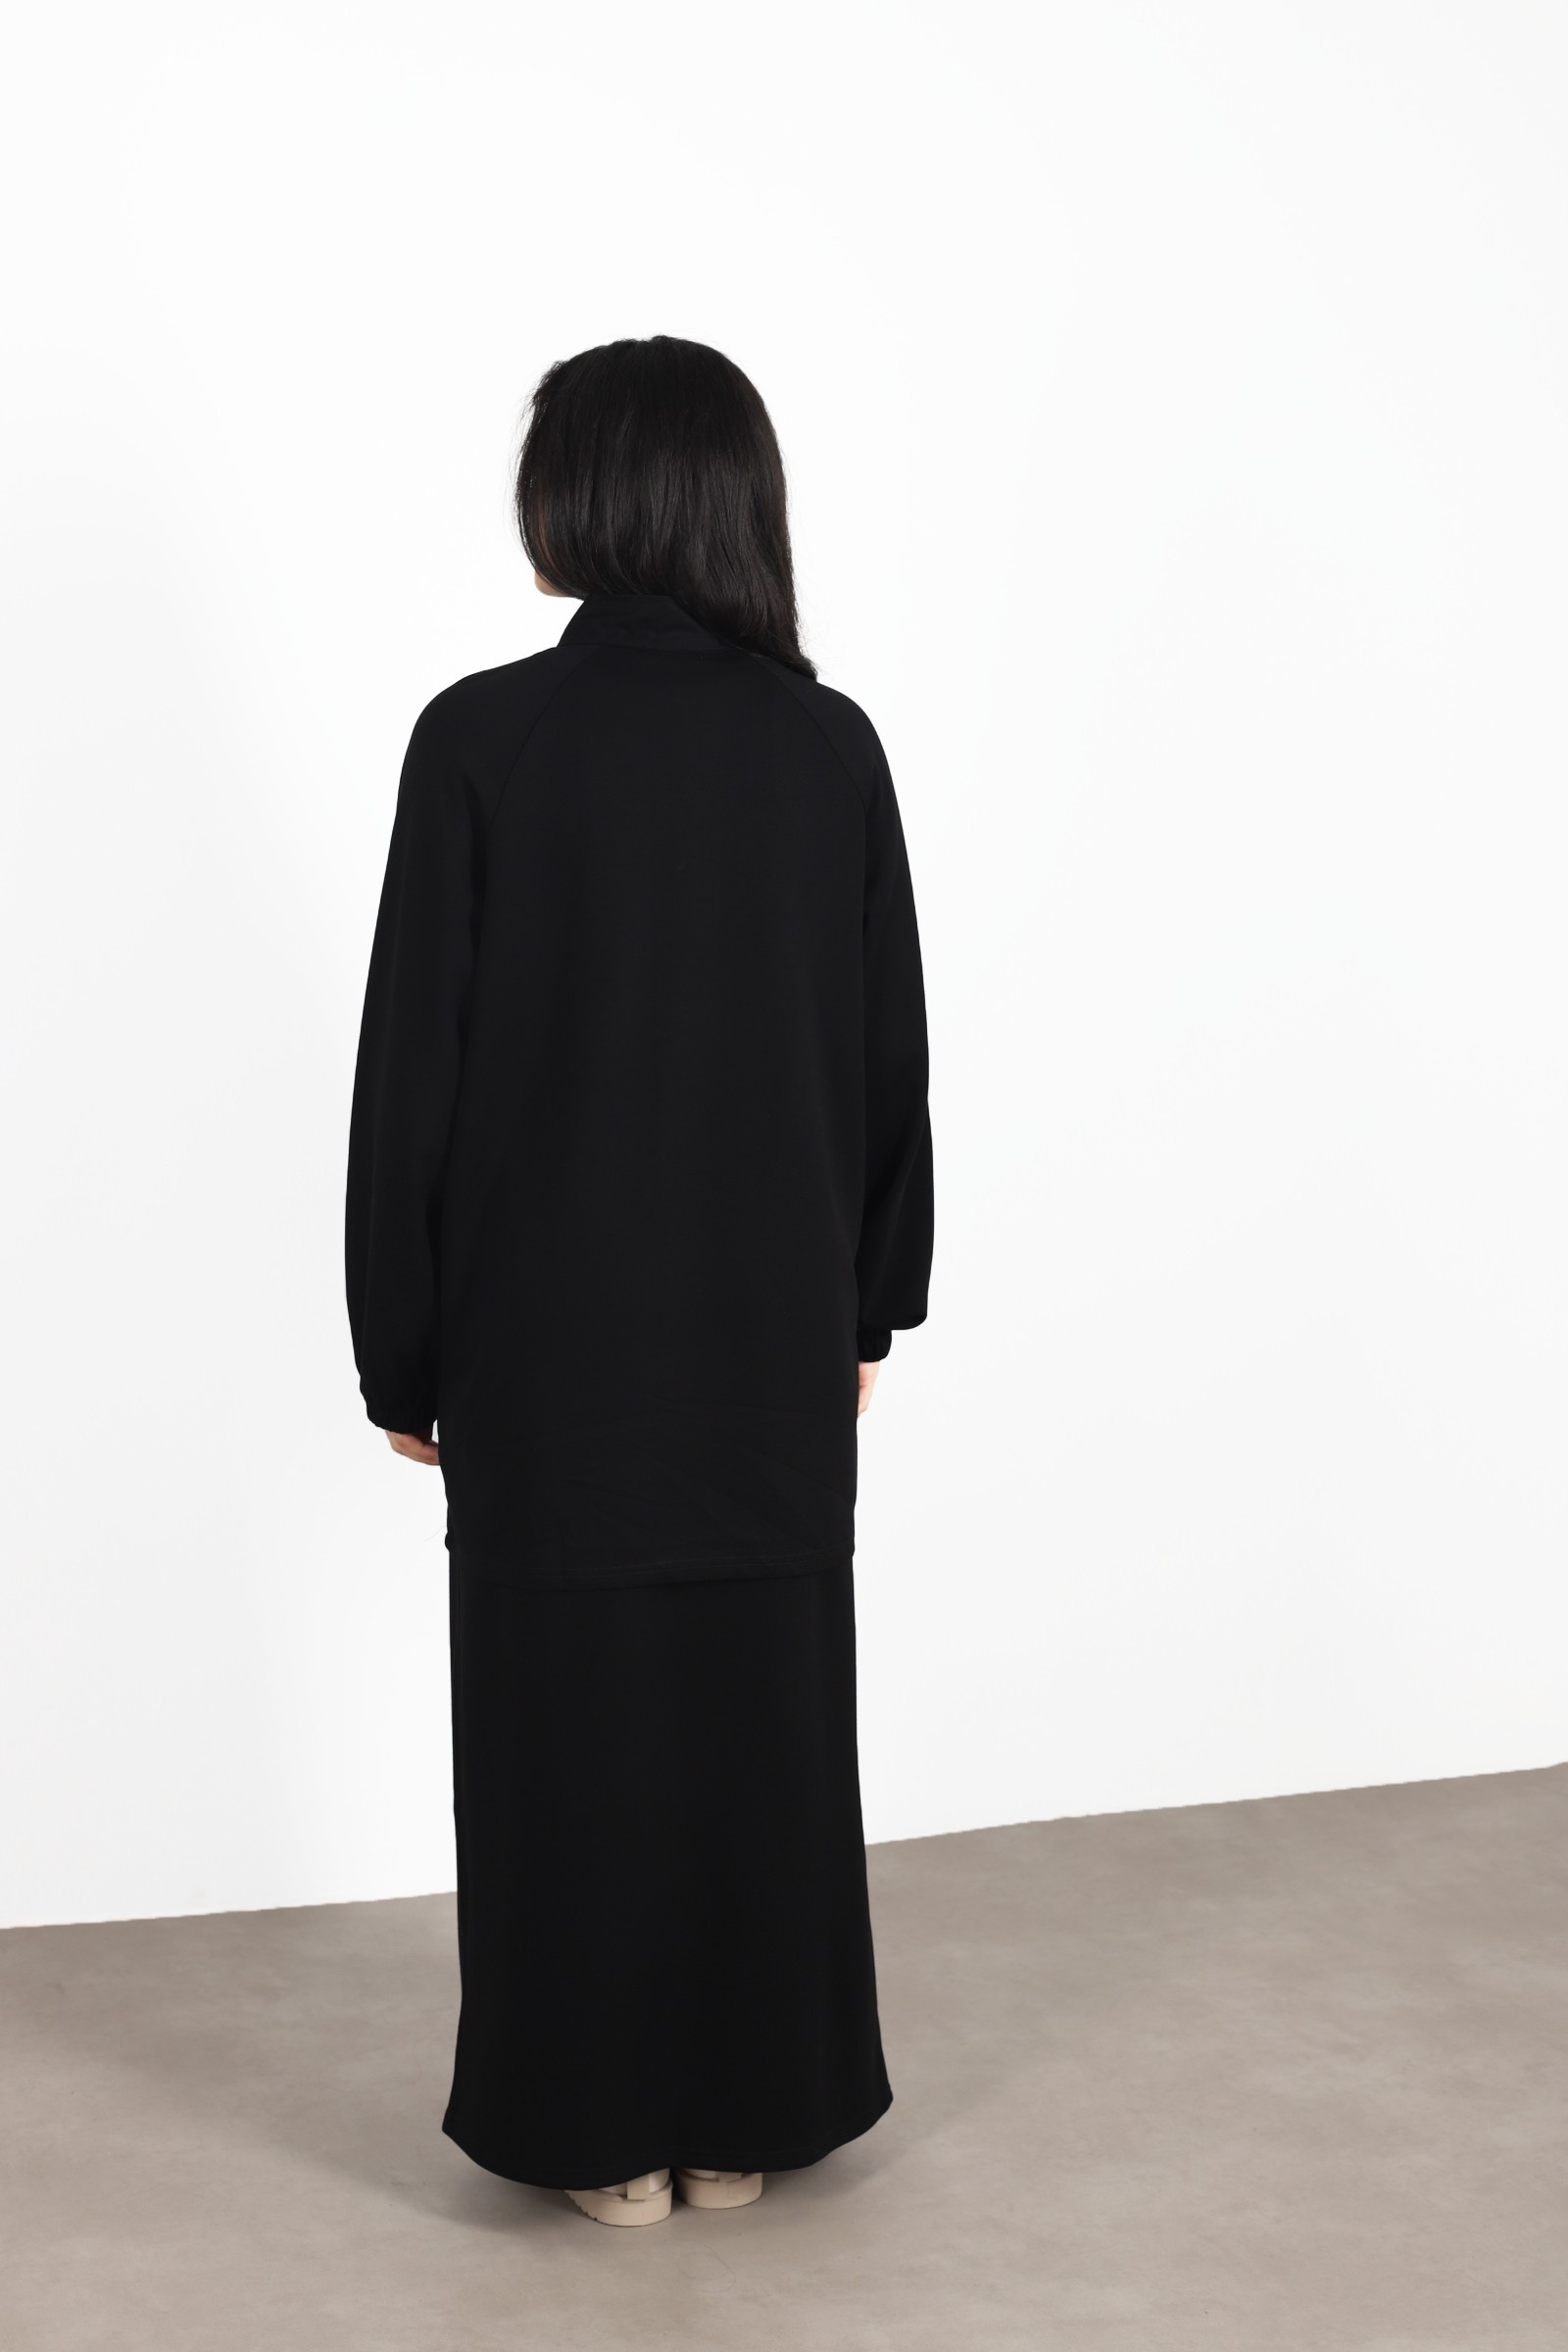 Ensemble femme voilée jupe noir , hijeb femme 2023